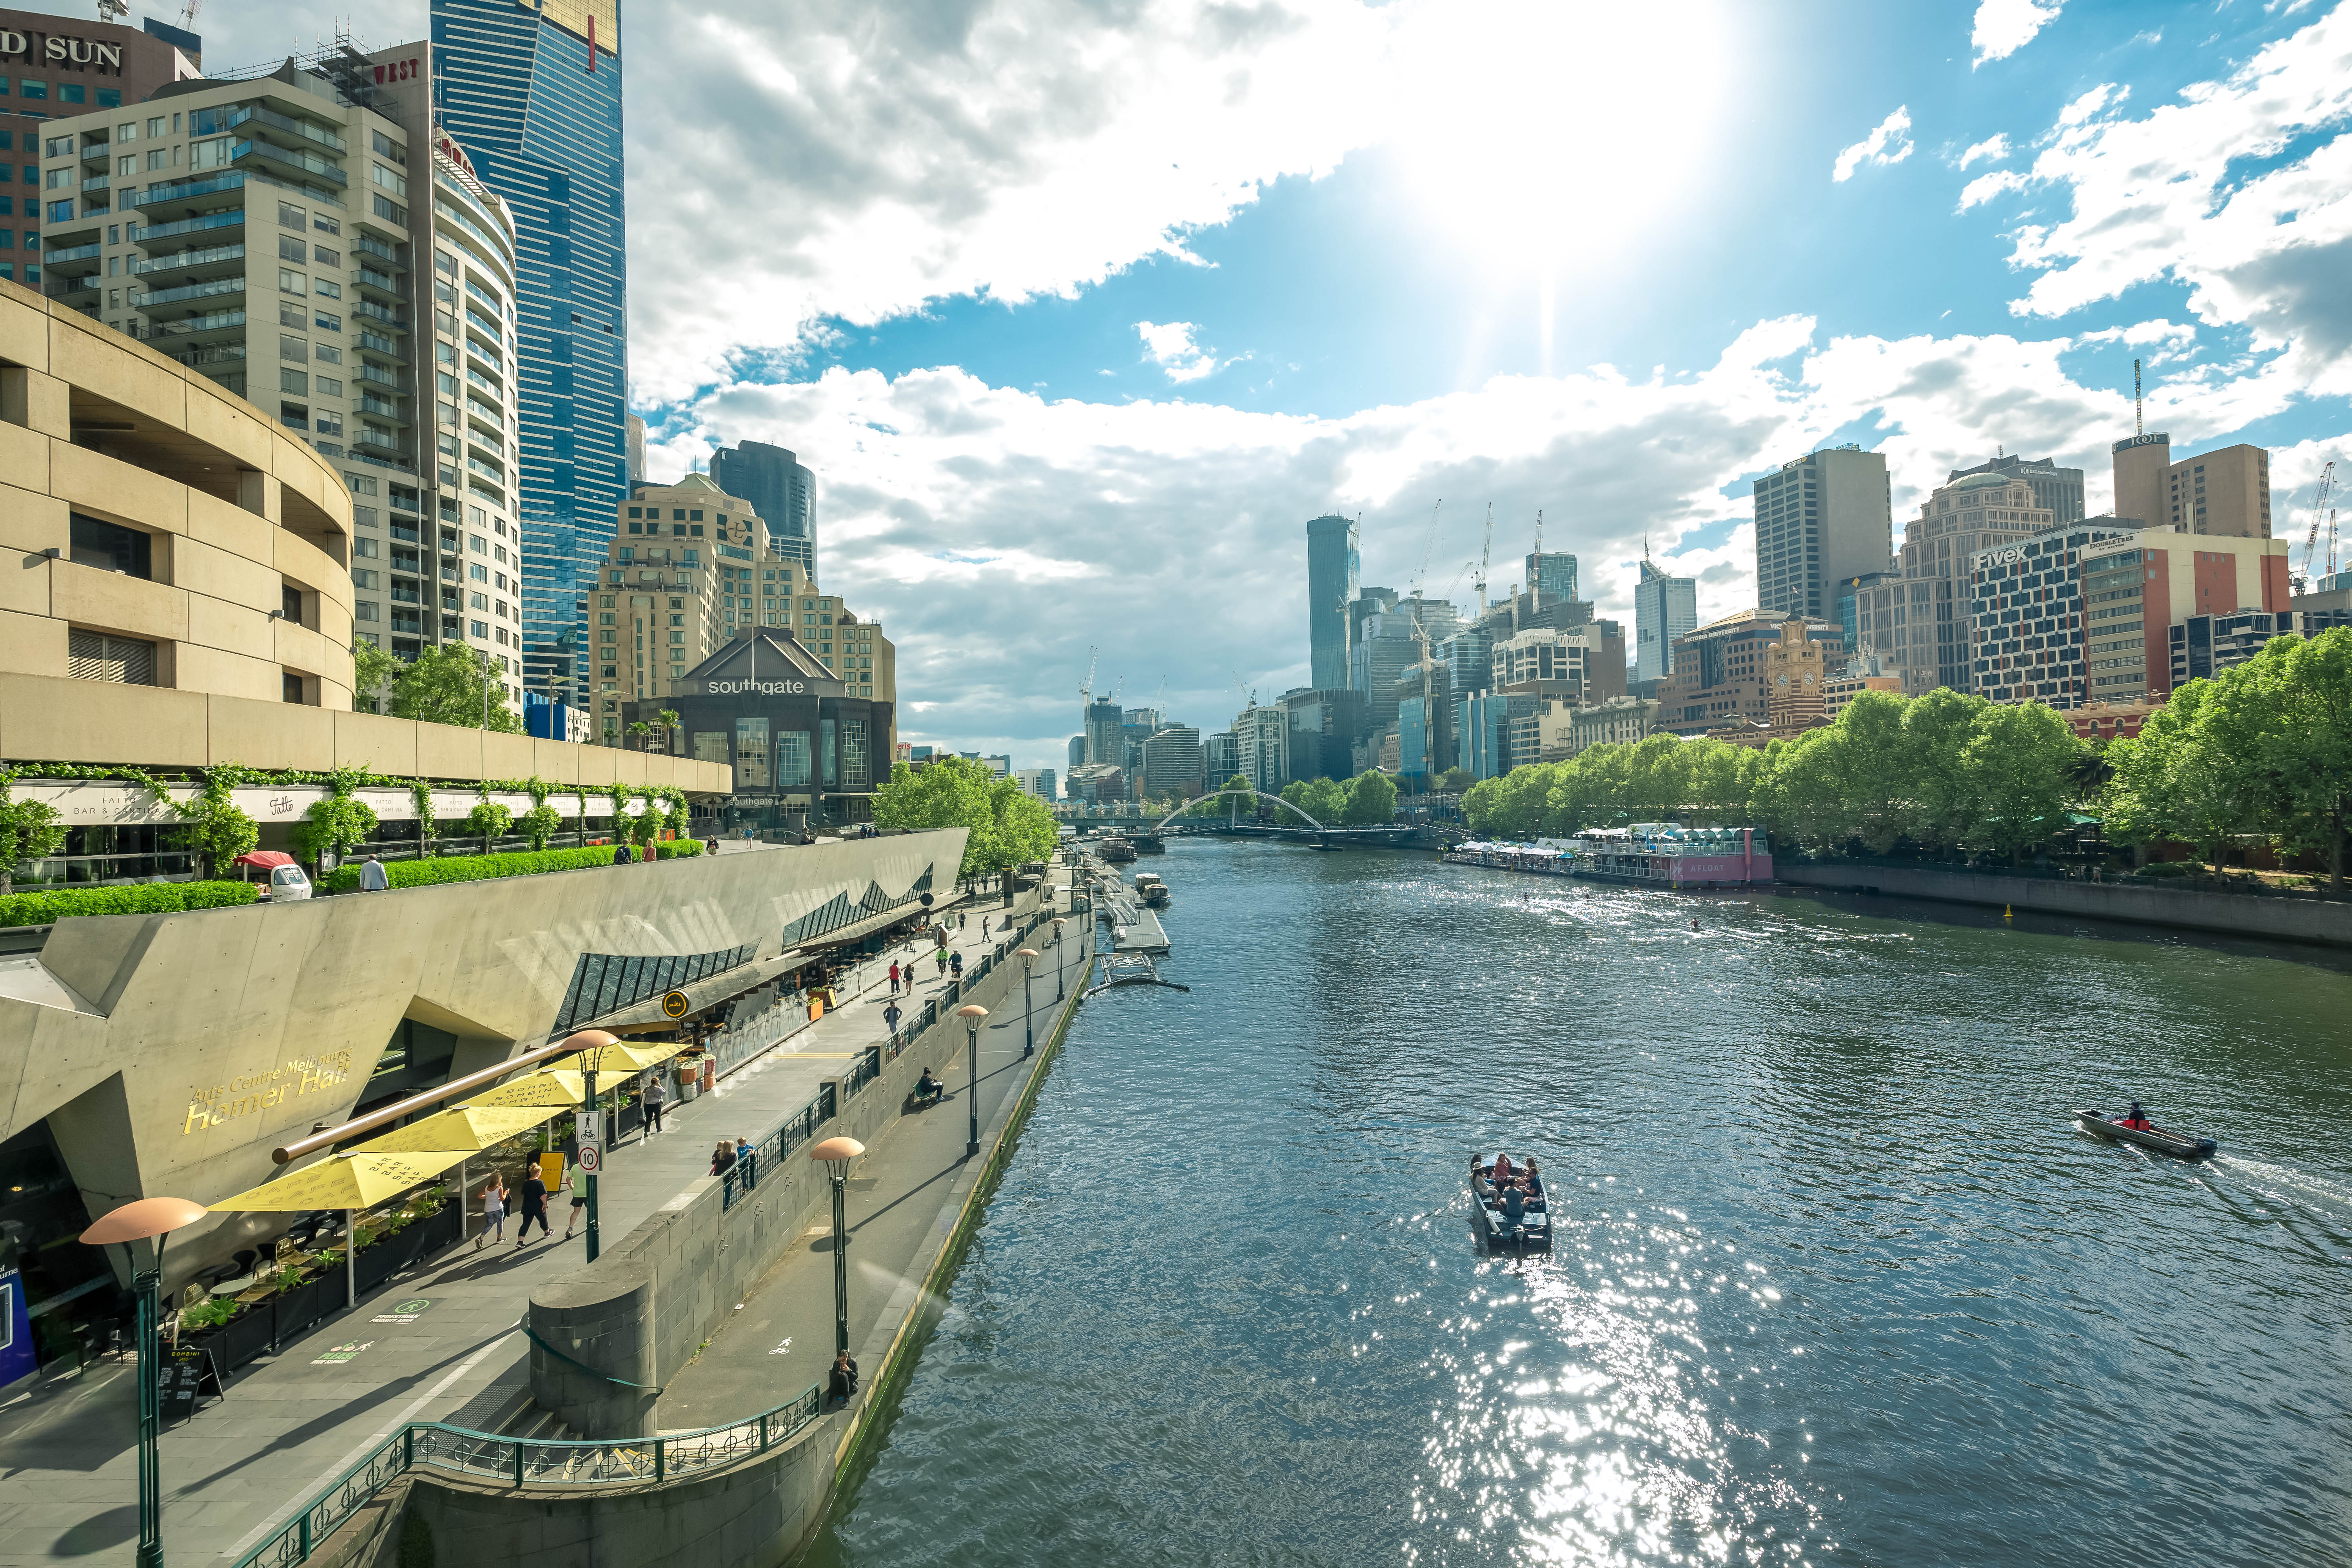 Melbourne_On a Boat_Yarra River_2019 (21).jpg